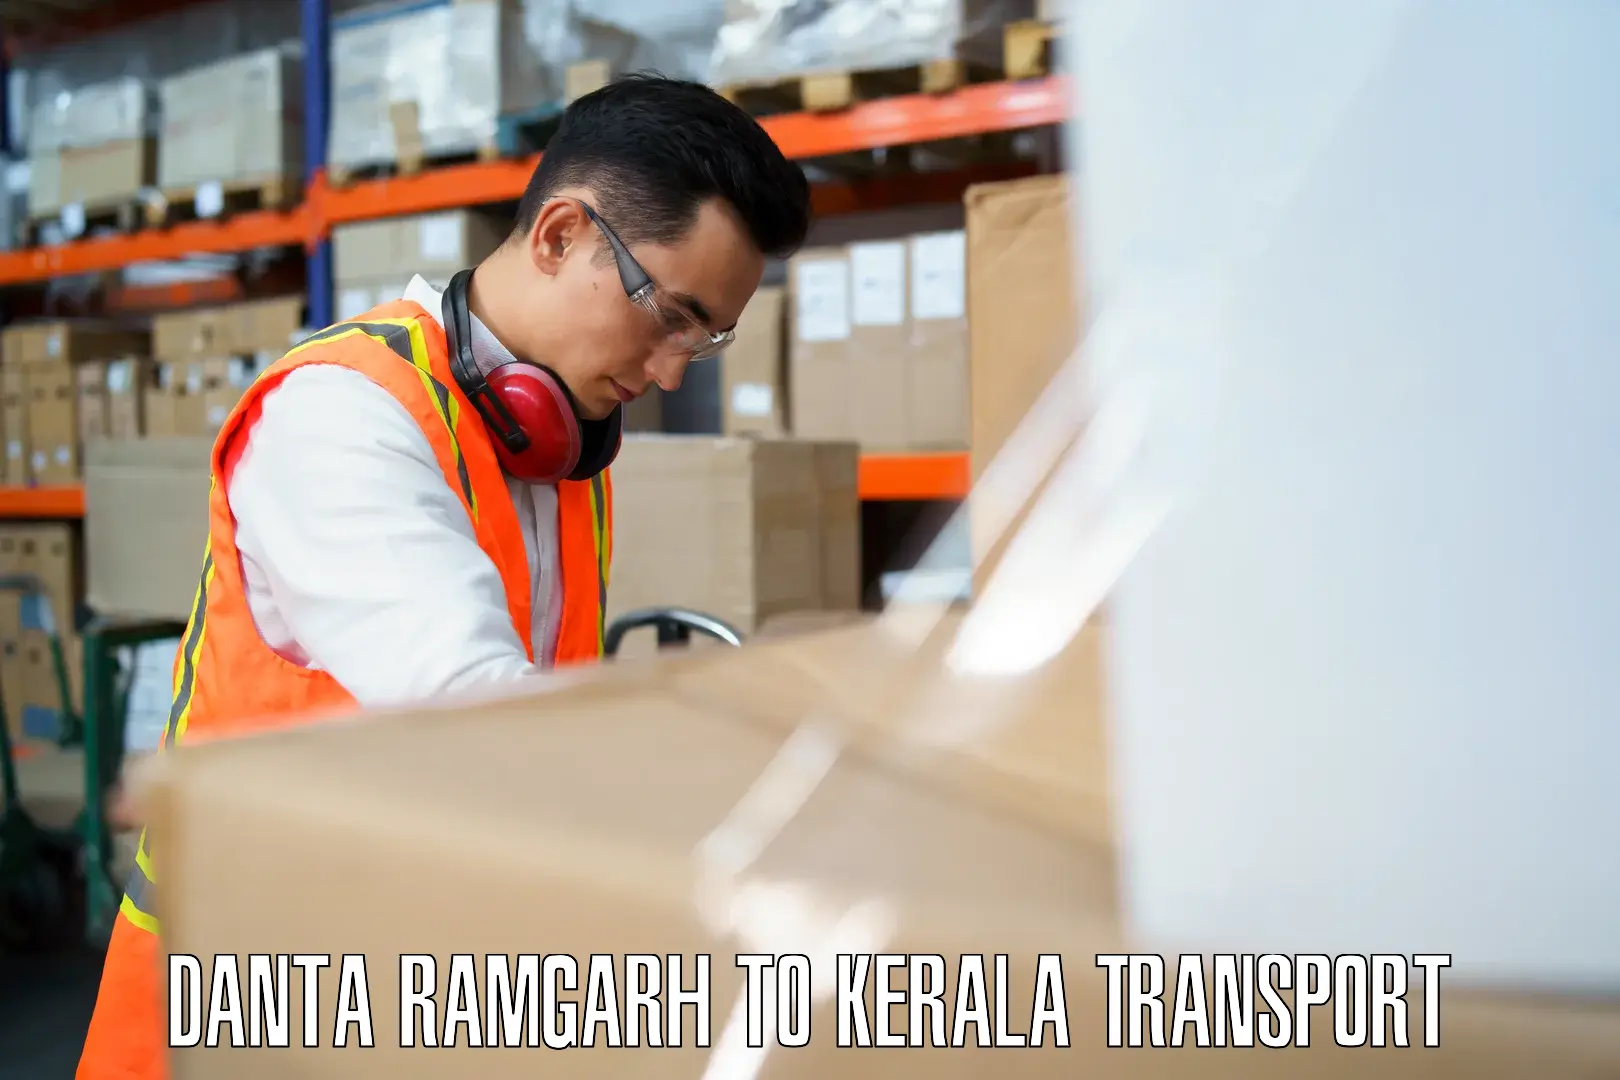 Truck transport companies in India Danta Ramgarh to Kerala University Thiruvananthapuram